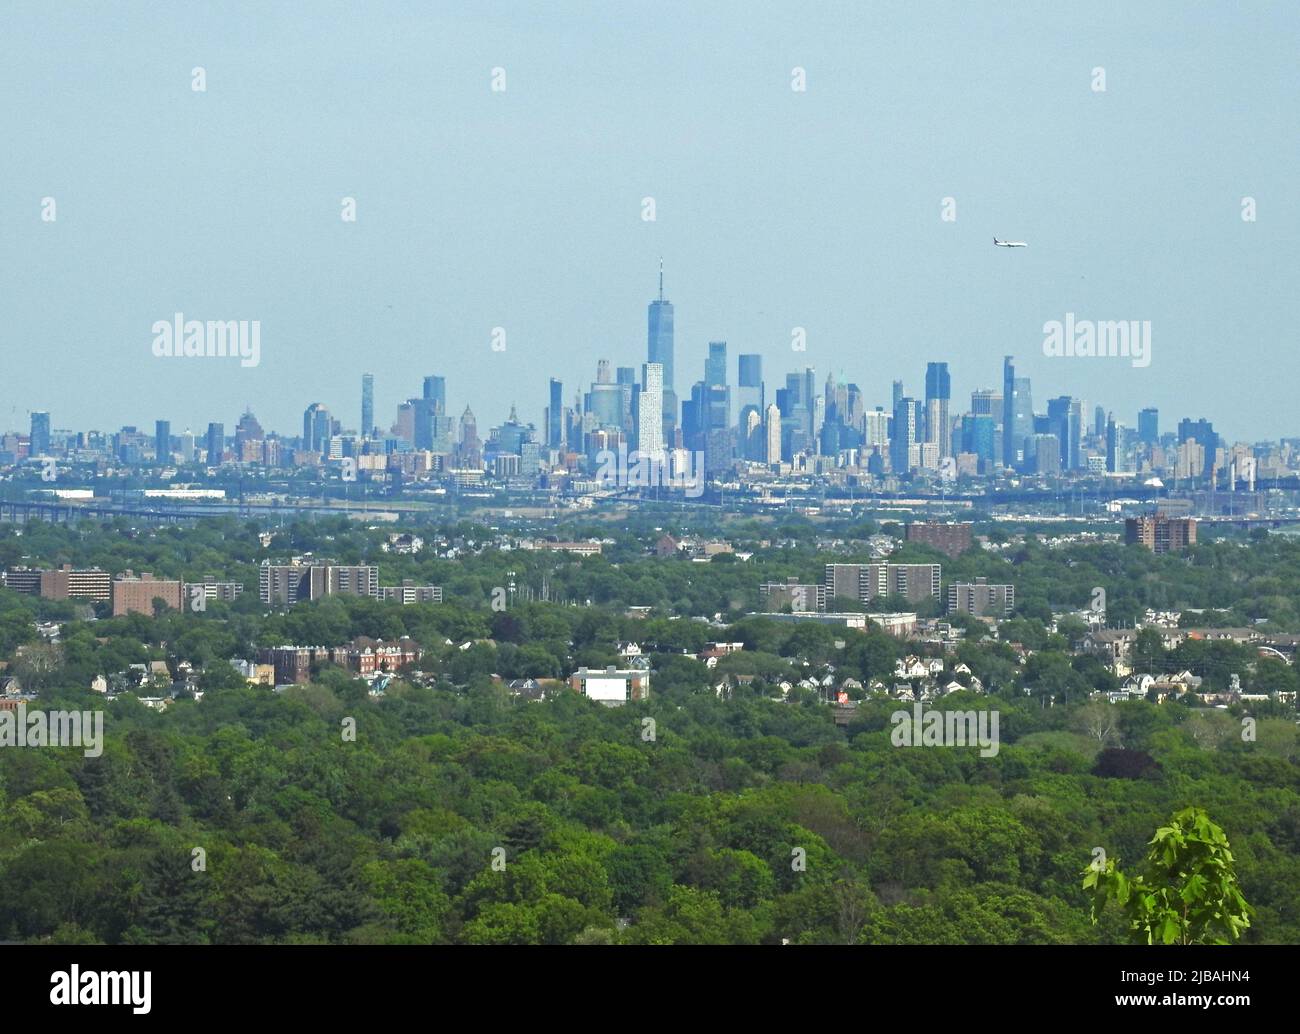 Vista del horizonte de Manhattan de la ciudad de Nueva York desde la reserva Eagle Rock en Montclair, NJ, con alguna distorsión atmosférica causada por la distancia -01 Foto de stock